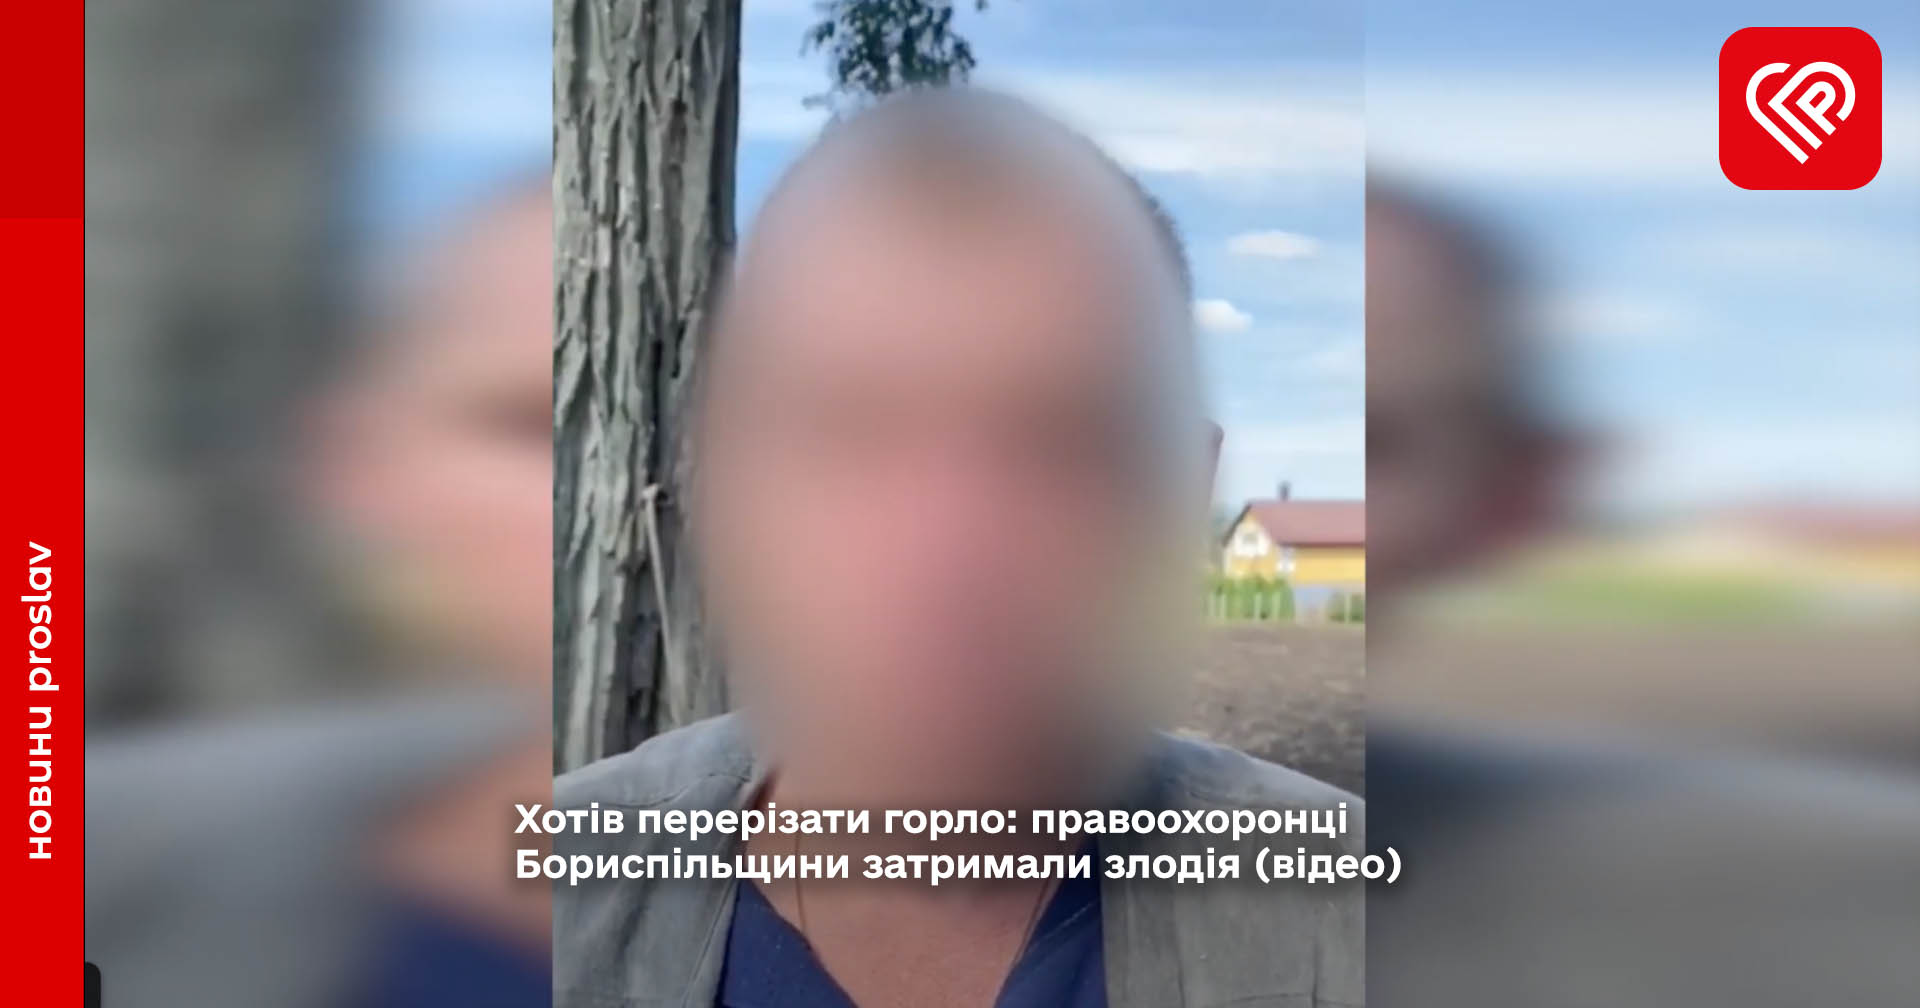 Хотів перерізати горло: правоохоронці Бориспільщини затримали злодія